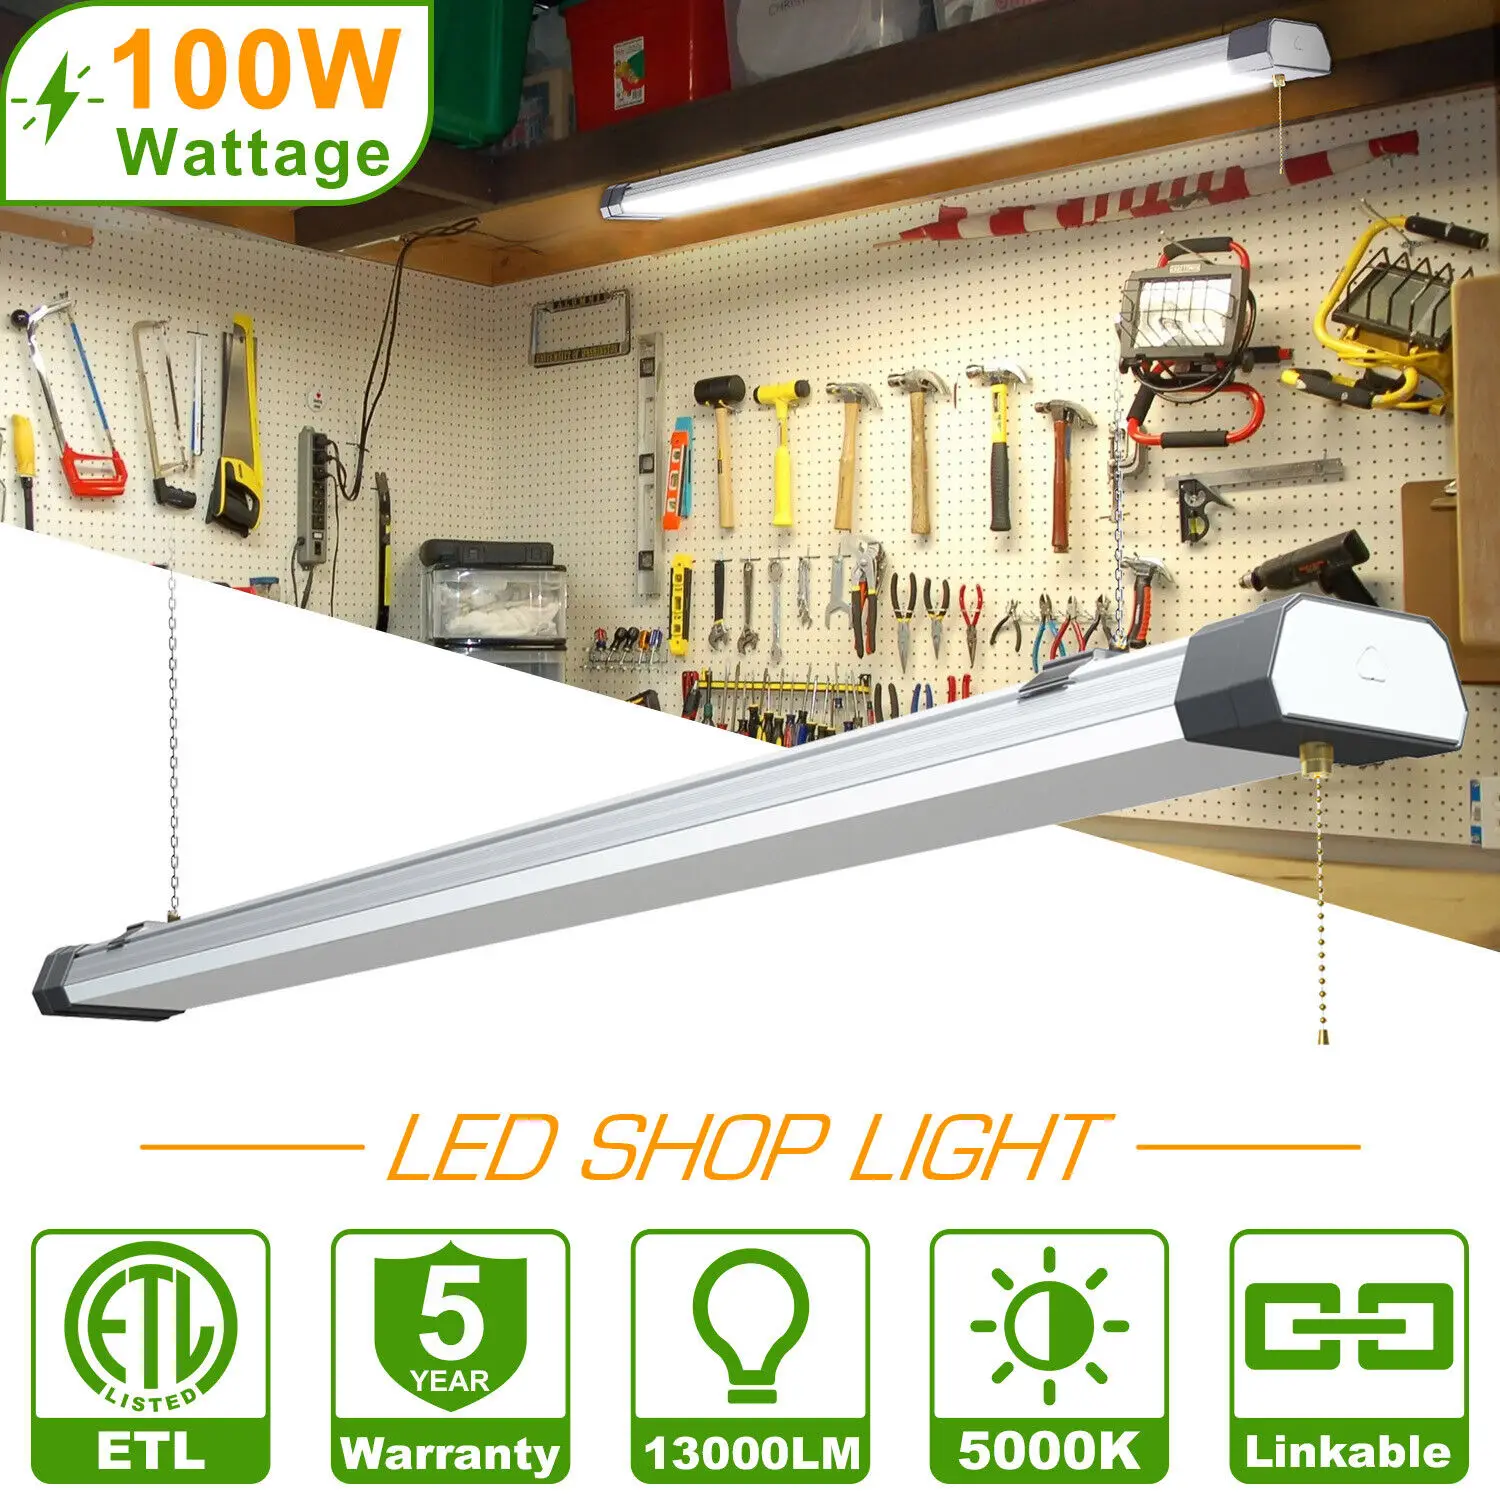 Linkable LED Shop Light ETL Listed 100W 12,000 LM 5000K Utility LED Ceiling Lights for Garage, 3.6FT Plug in Integrated Fixture